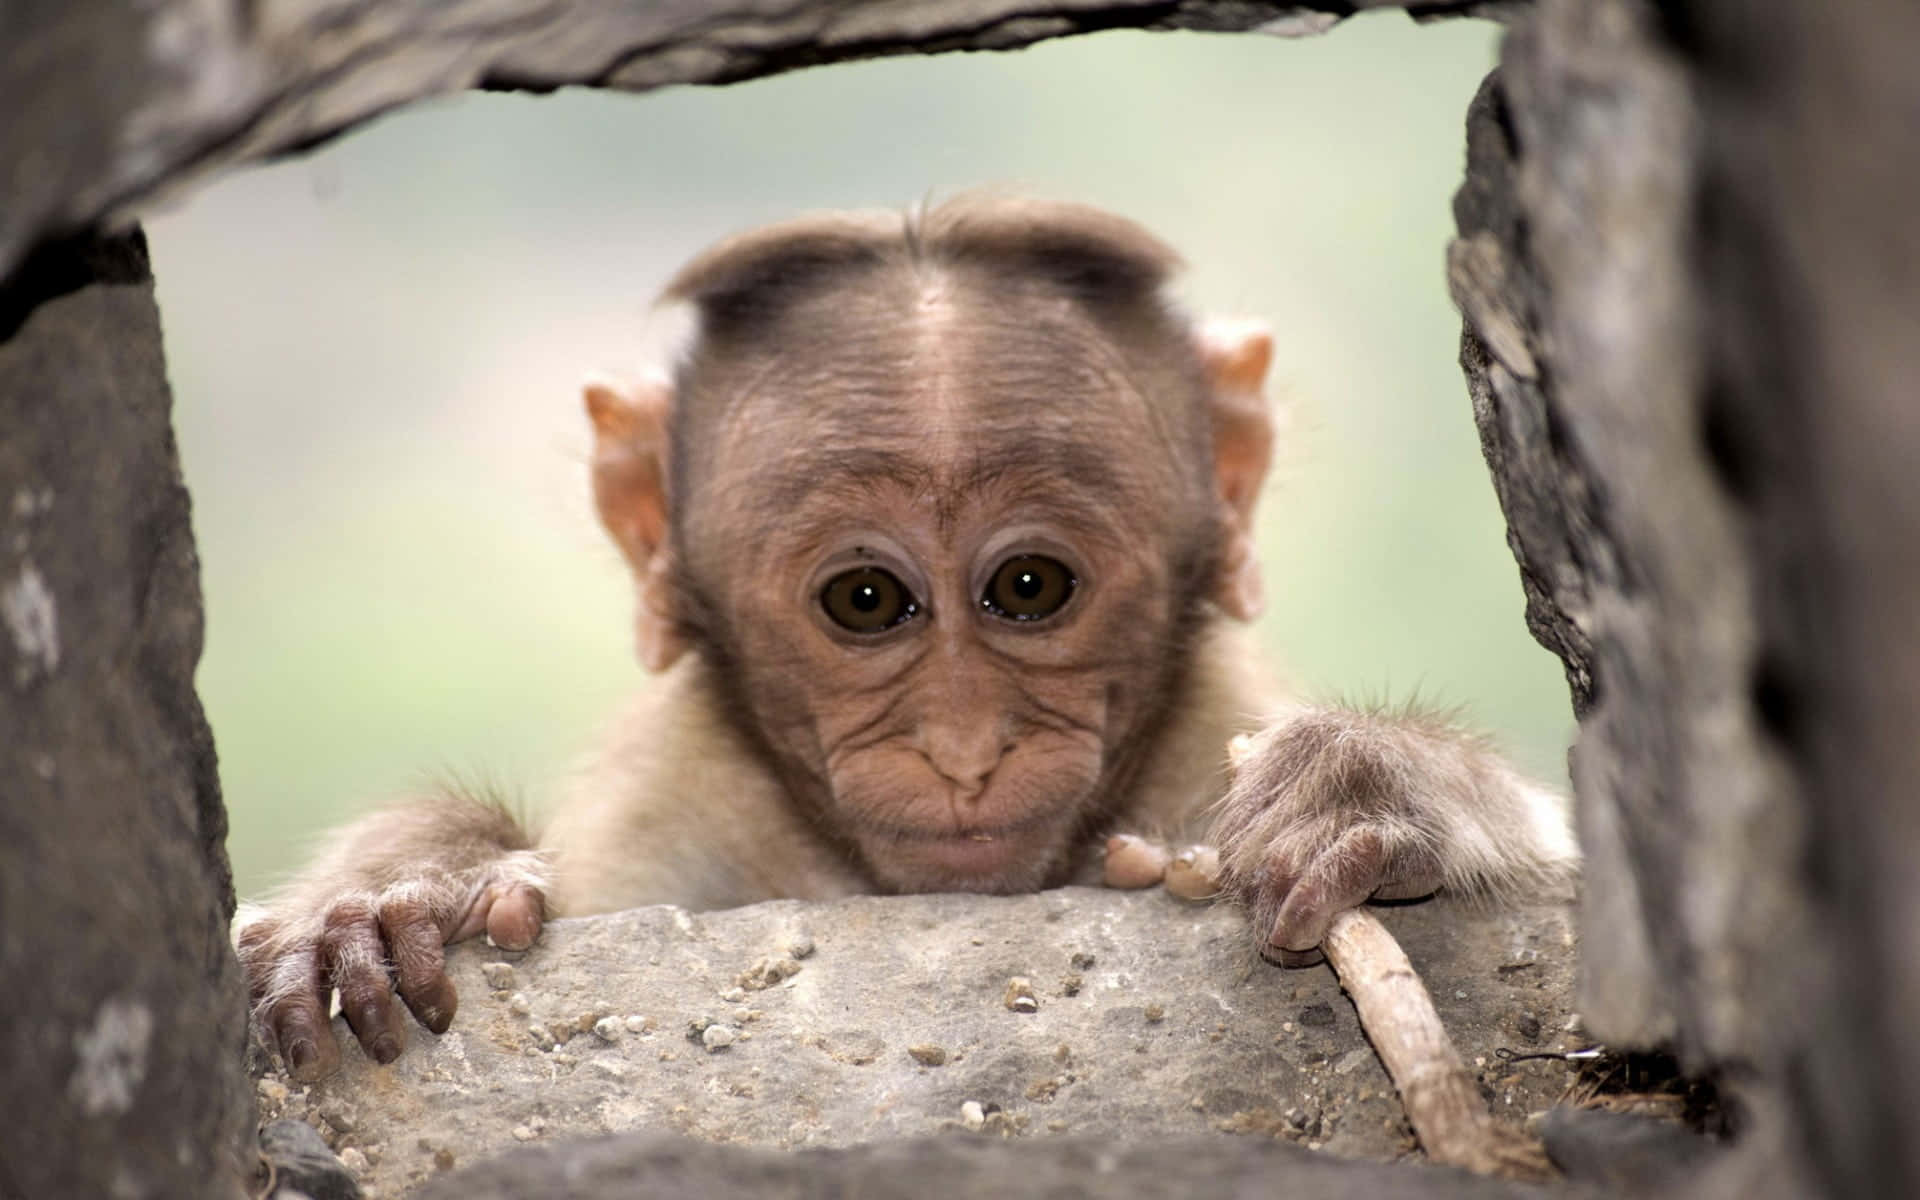 Adorable Cute Monkey Enjoying A Banana